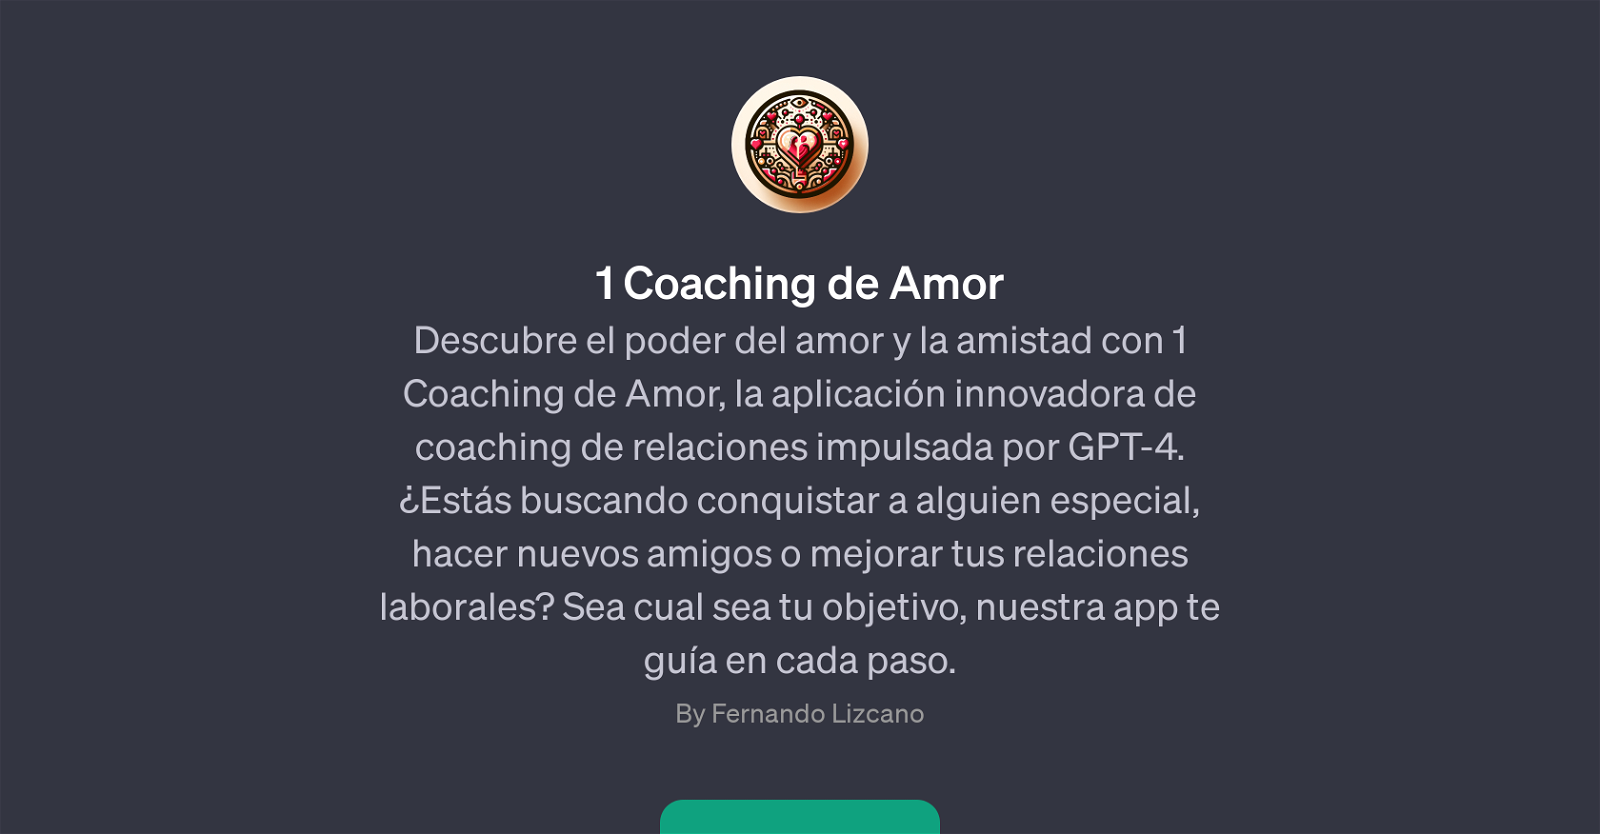 1 Coaching de Amor website